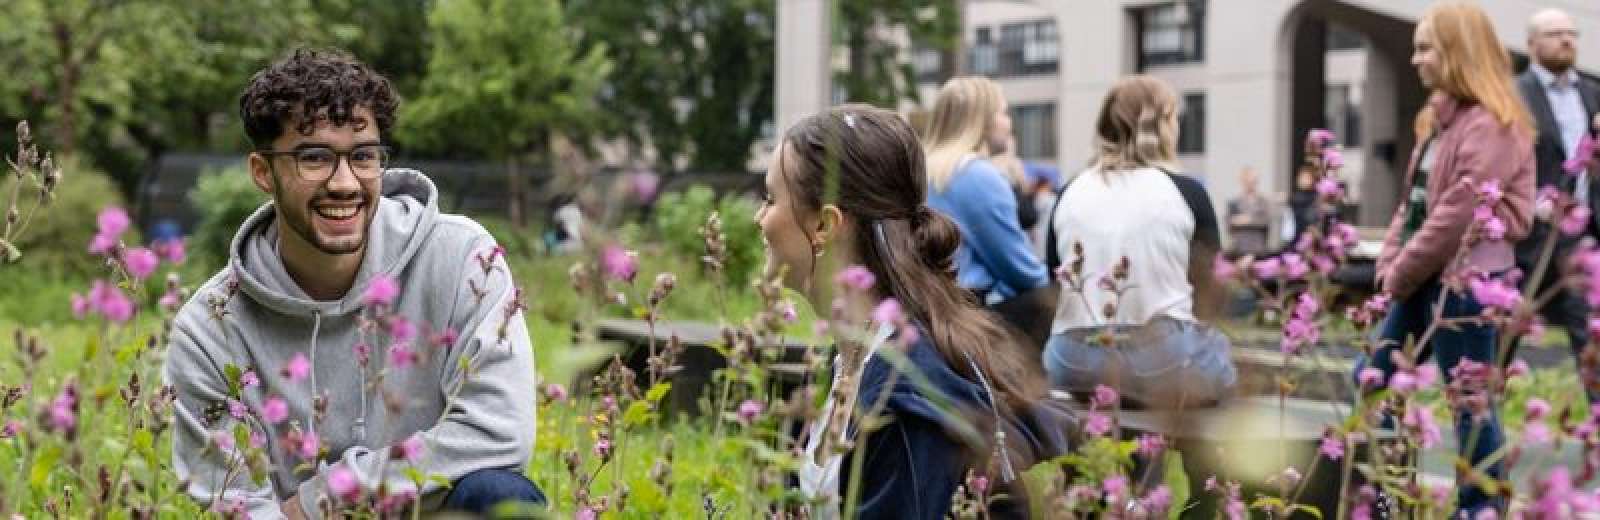 Students talking in sustainable garden